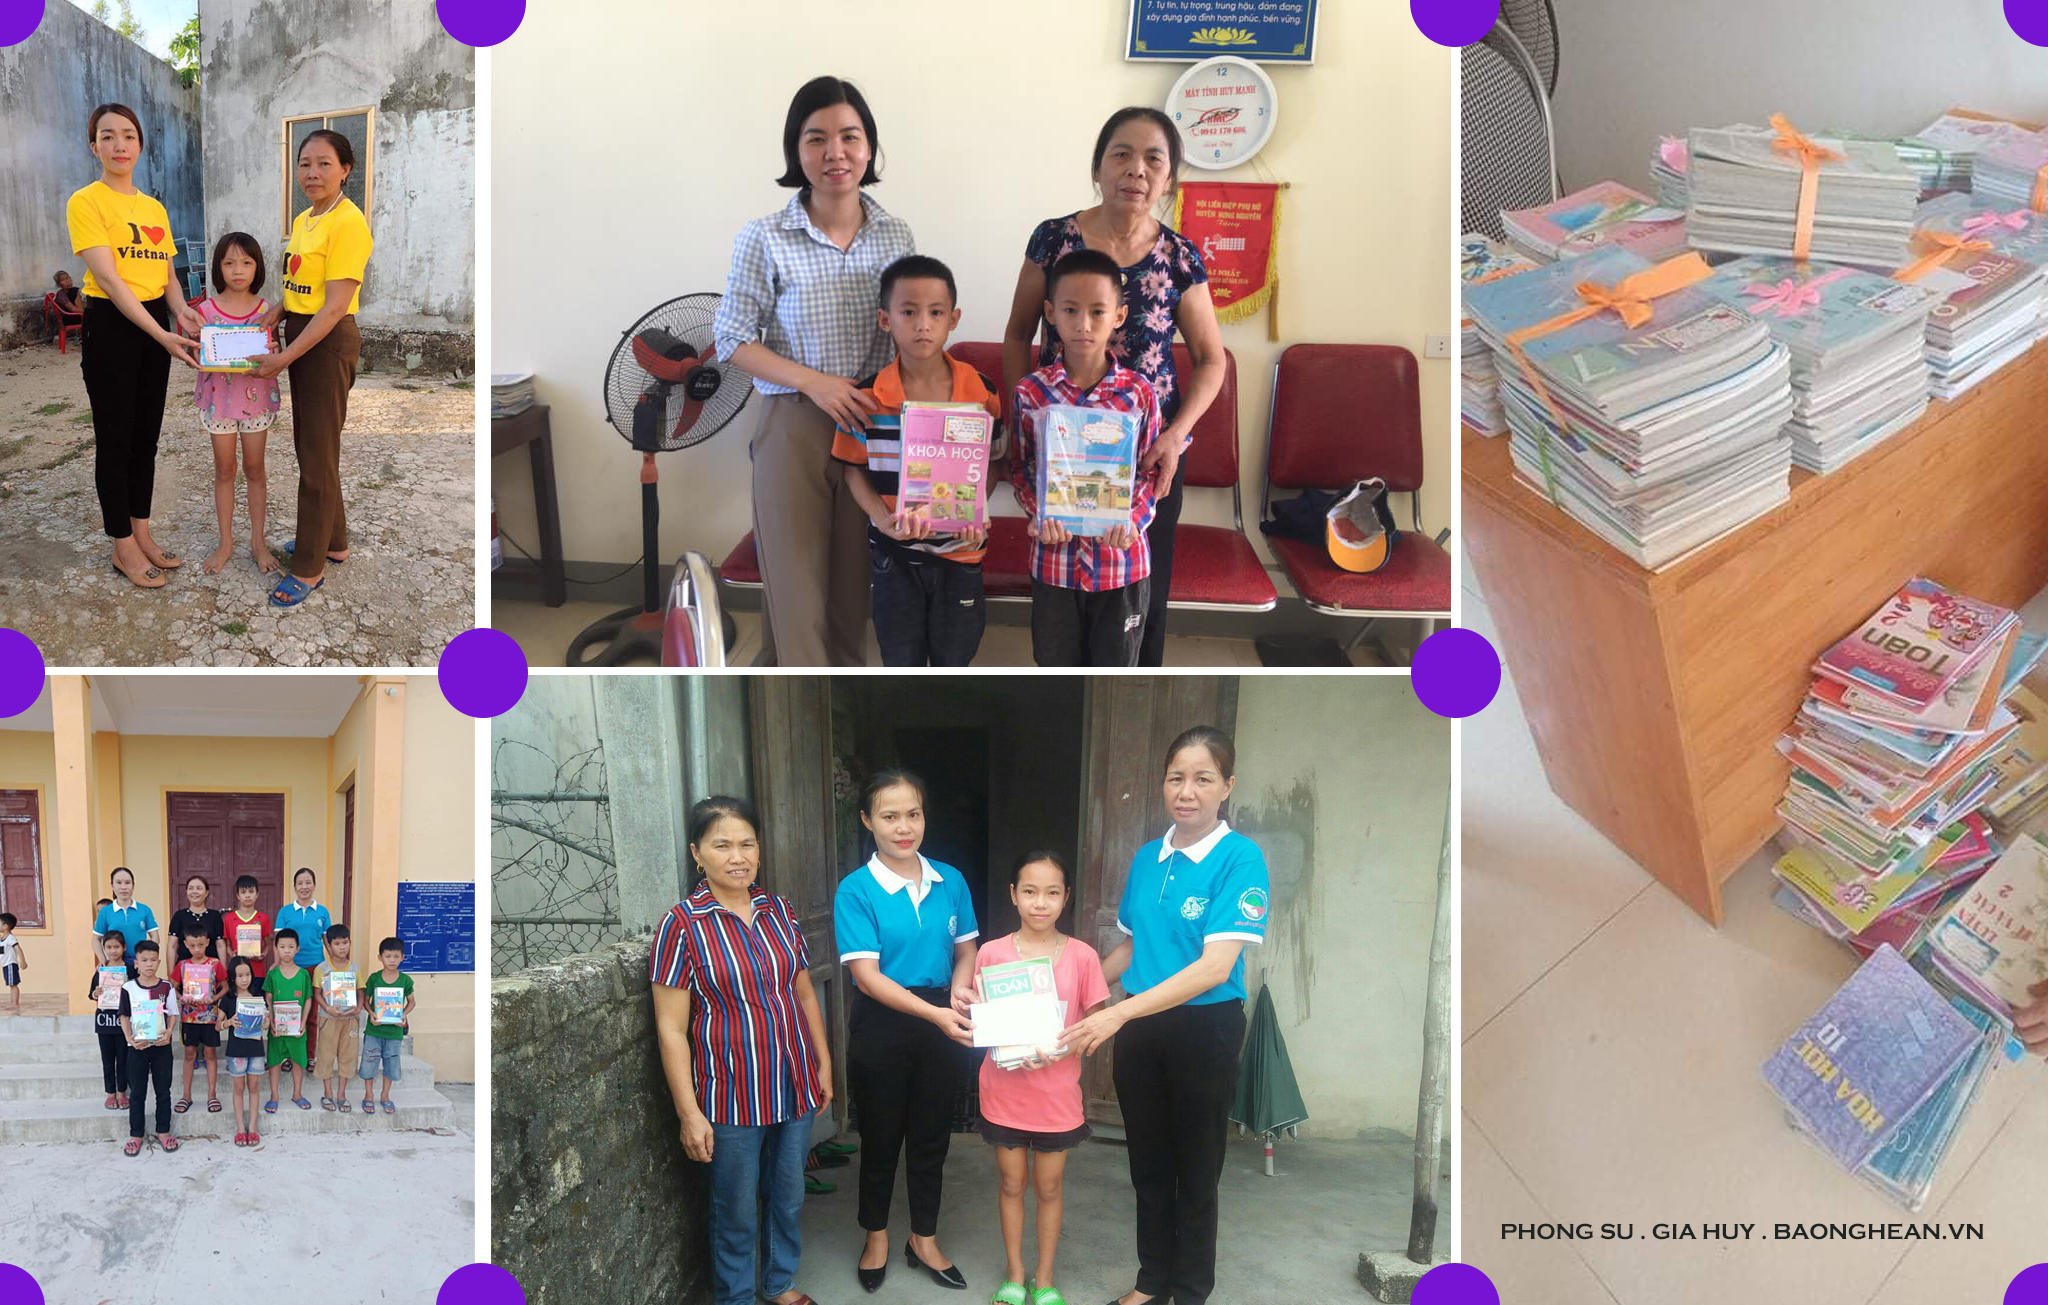 Phụ nữ xã Hưng Nghĩa, Hưng Yên Bắc và Long Xá tặng sách và trao quà cho trẻ em hoàn cảnh khó khăn trên địa bàn huyện Hưng Nguyên.